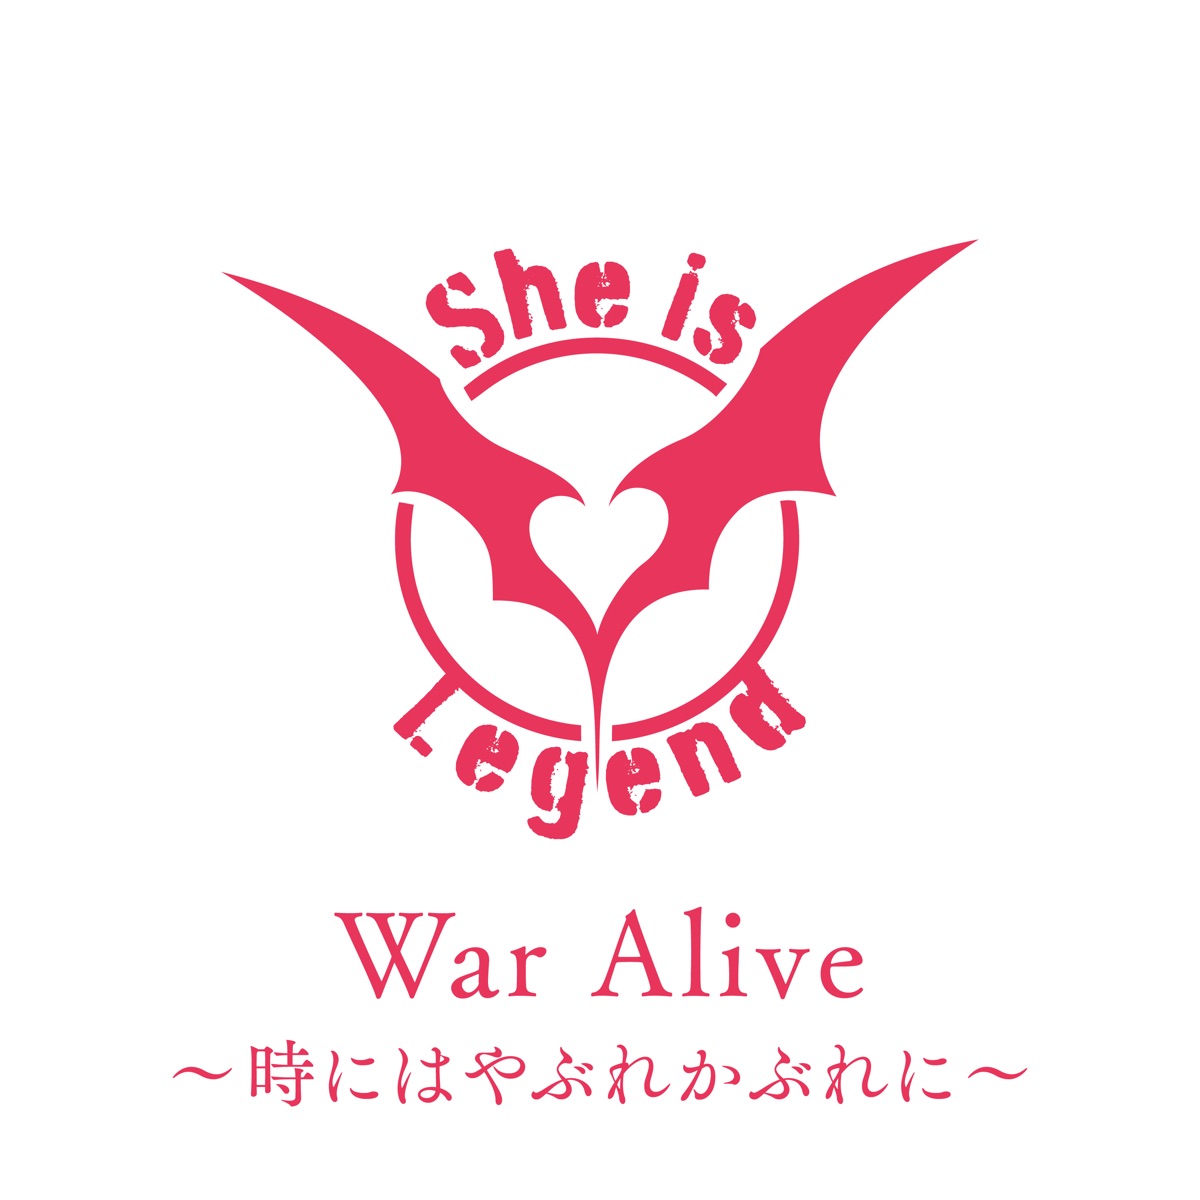 Cover art for『She is Legend - War Alive〜時にはやぶれかぶれに〜』from the release『War Alive ~Toki ni wa Yabure Kabure ni~